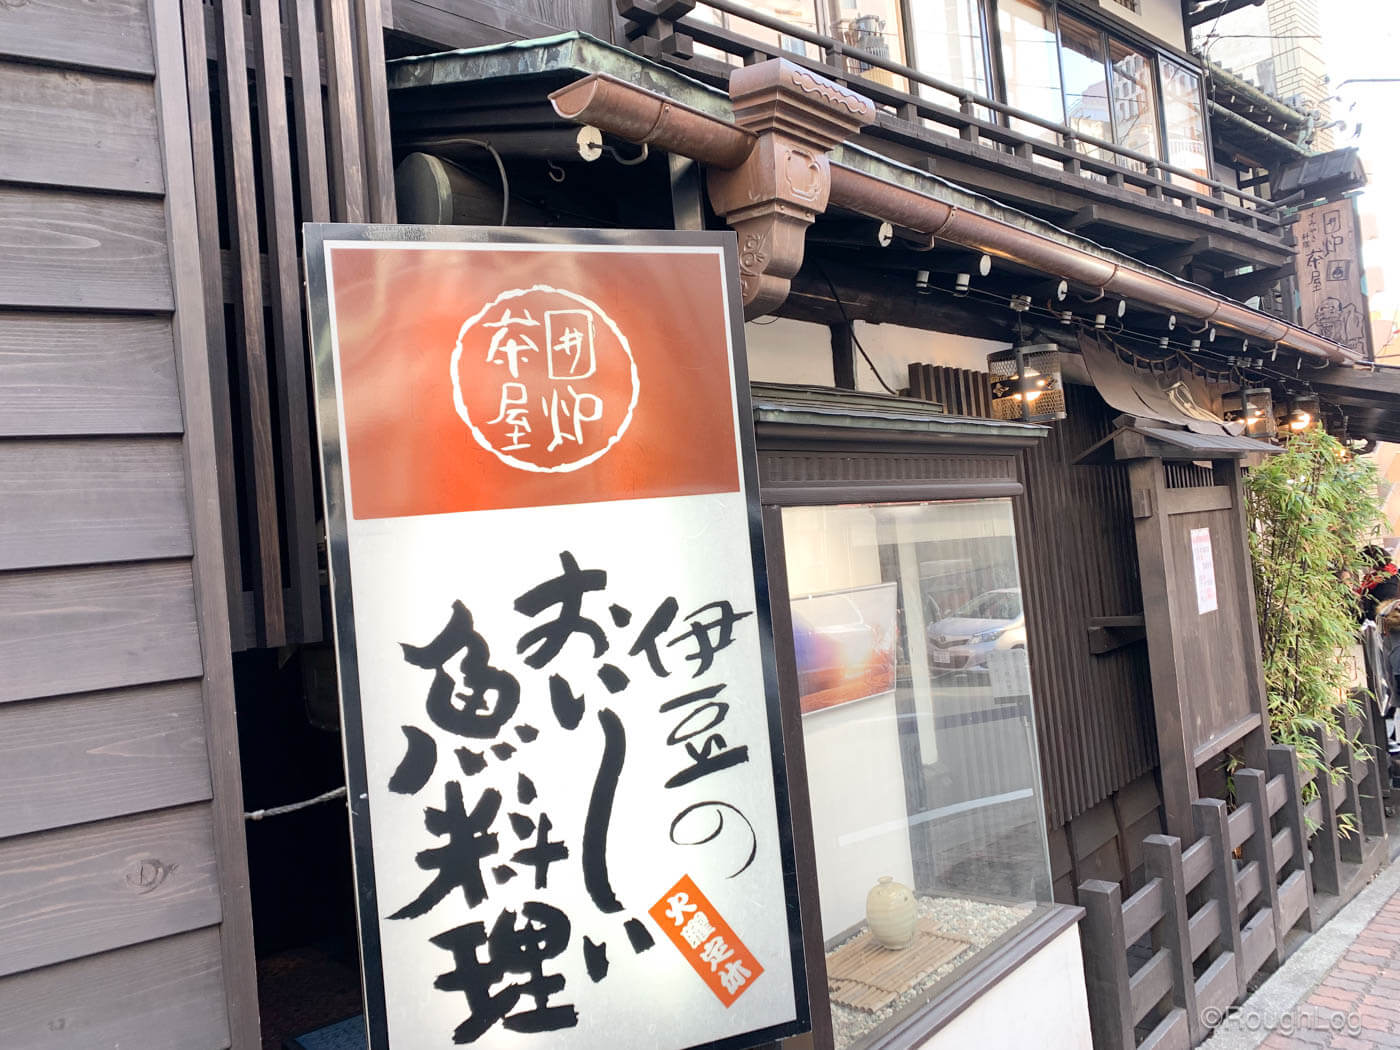 通りを歩いていると「伊豆のおいしい魚料理」と書かれた囲炉茶屋の看板が見えてきます